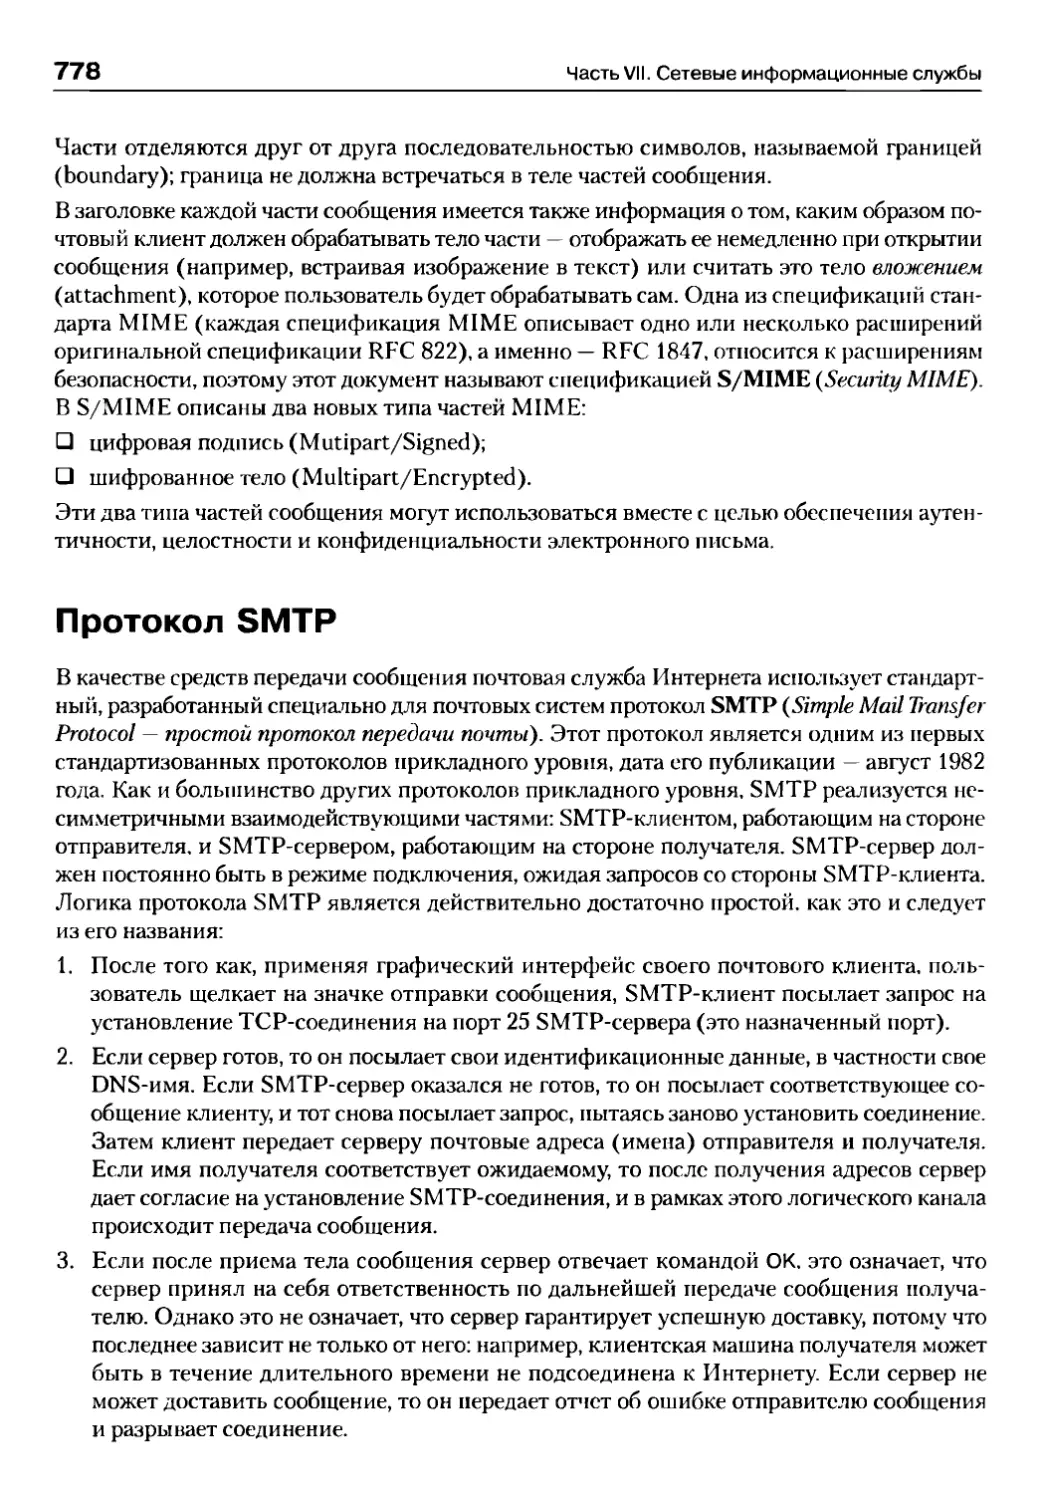 Протокол SMTP